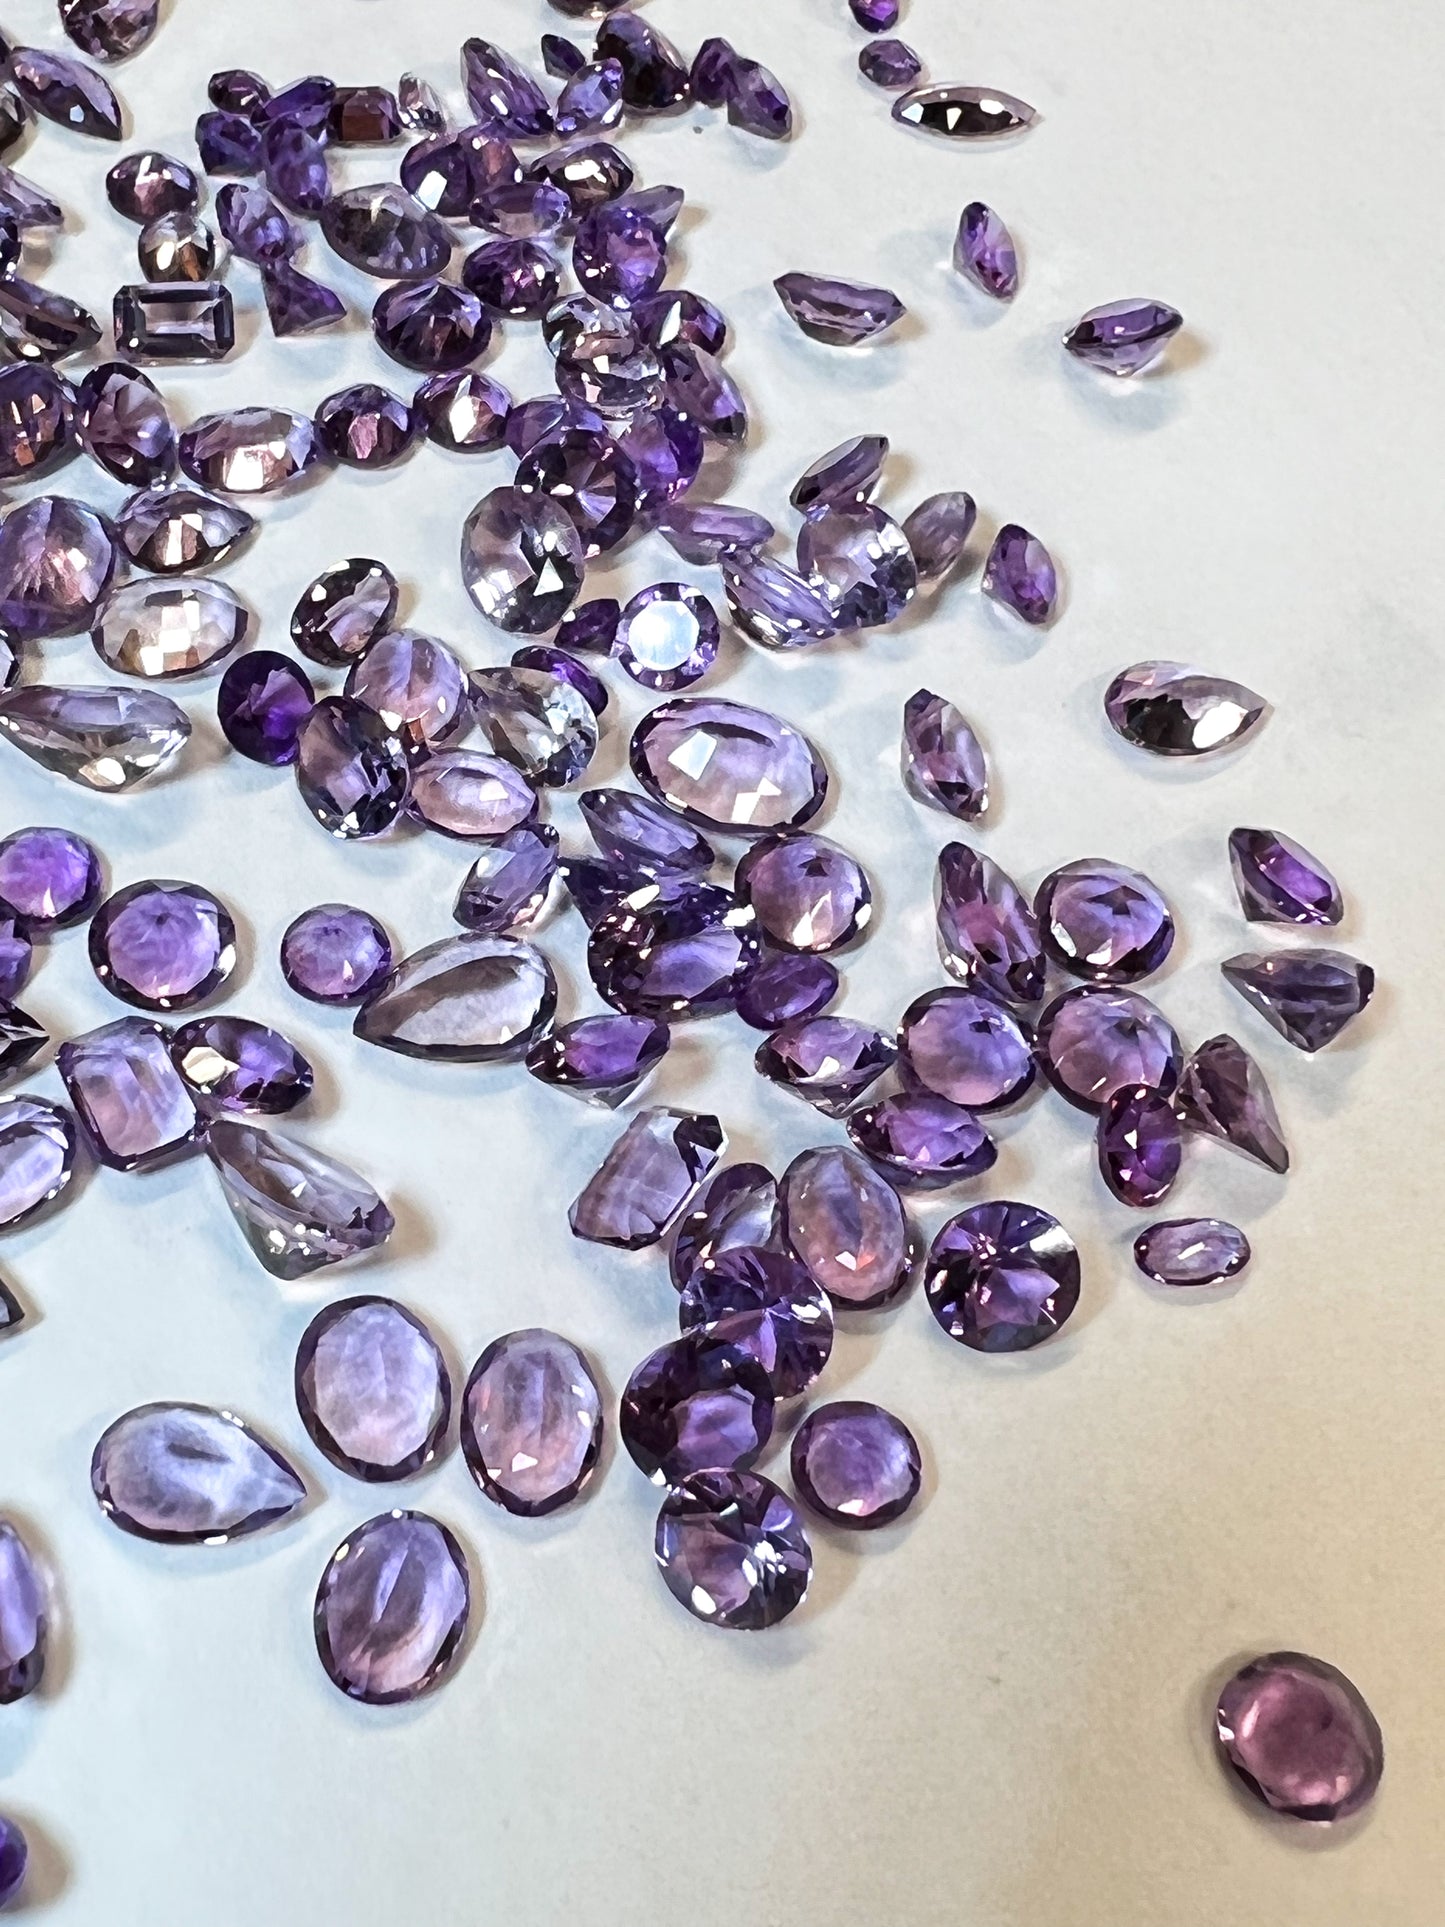 7 Amethyst Faceted Gemstones